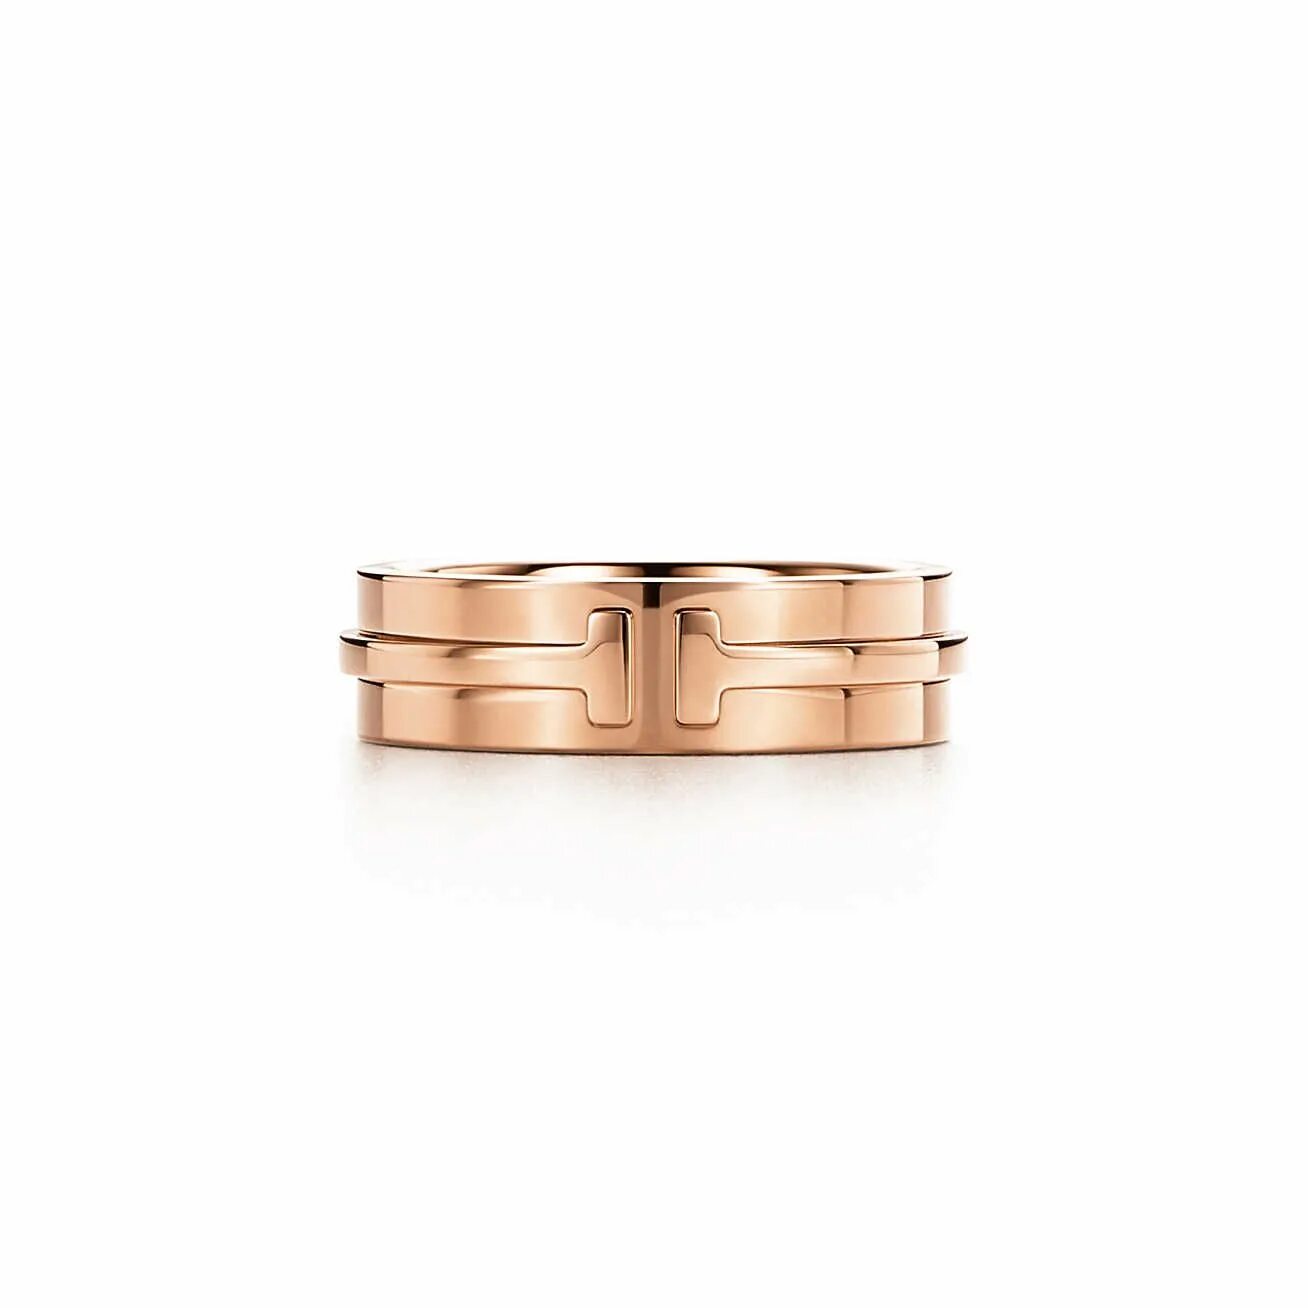 Кольцо Тиффани t wire. Tiffany t 8-мм кольцо true из золота 18 карат. Кольцо Тиффани золото. Кольцо Тиффани 2024. Тиффани т